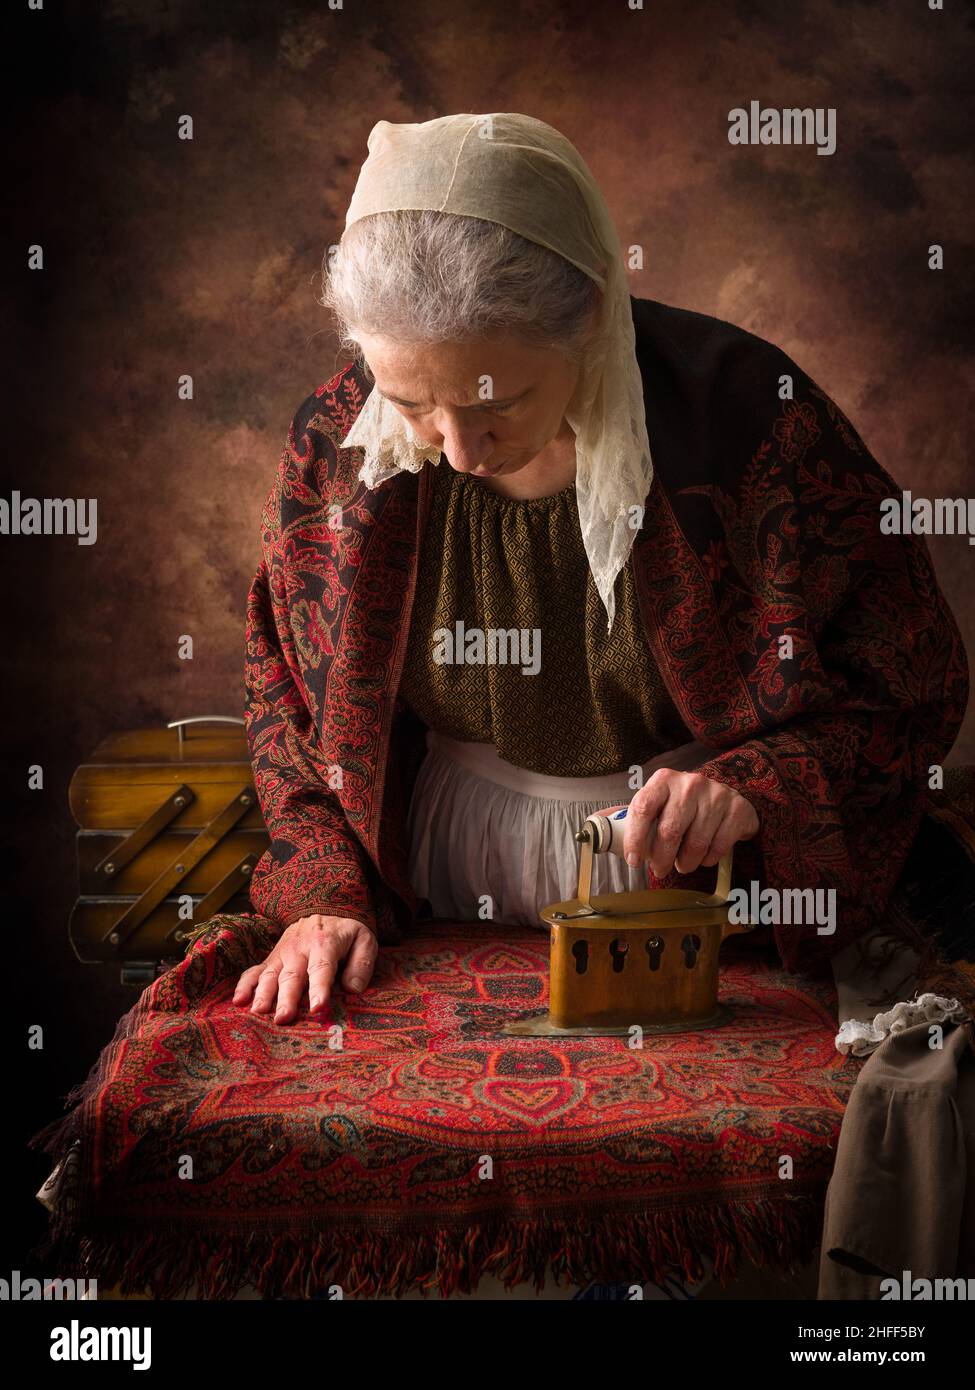 Alte Frau im viktorianischen Kleid, die mit einem antiken Holzkohleisen auf einem Brett arbeitet Stockfoto